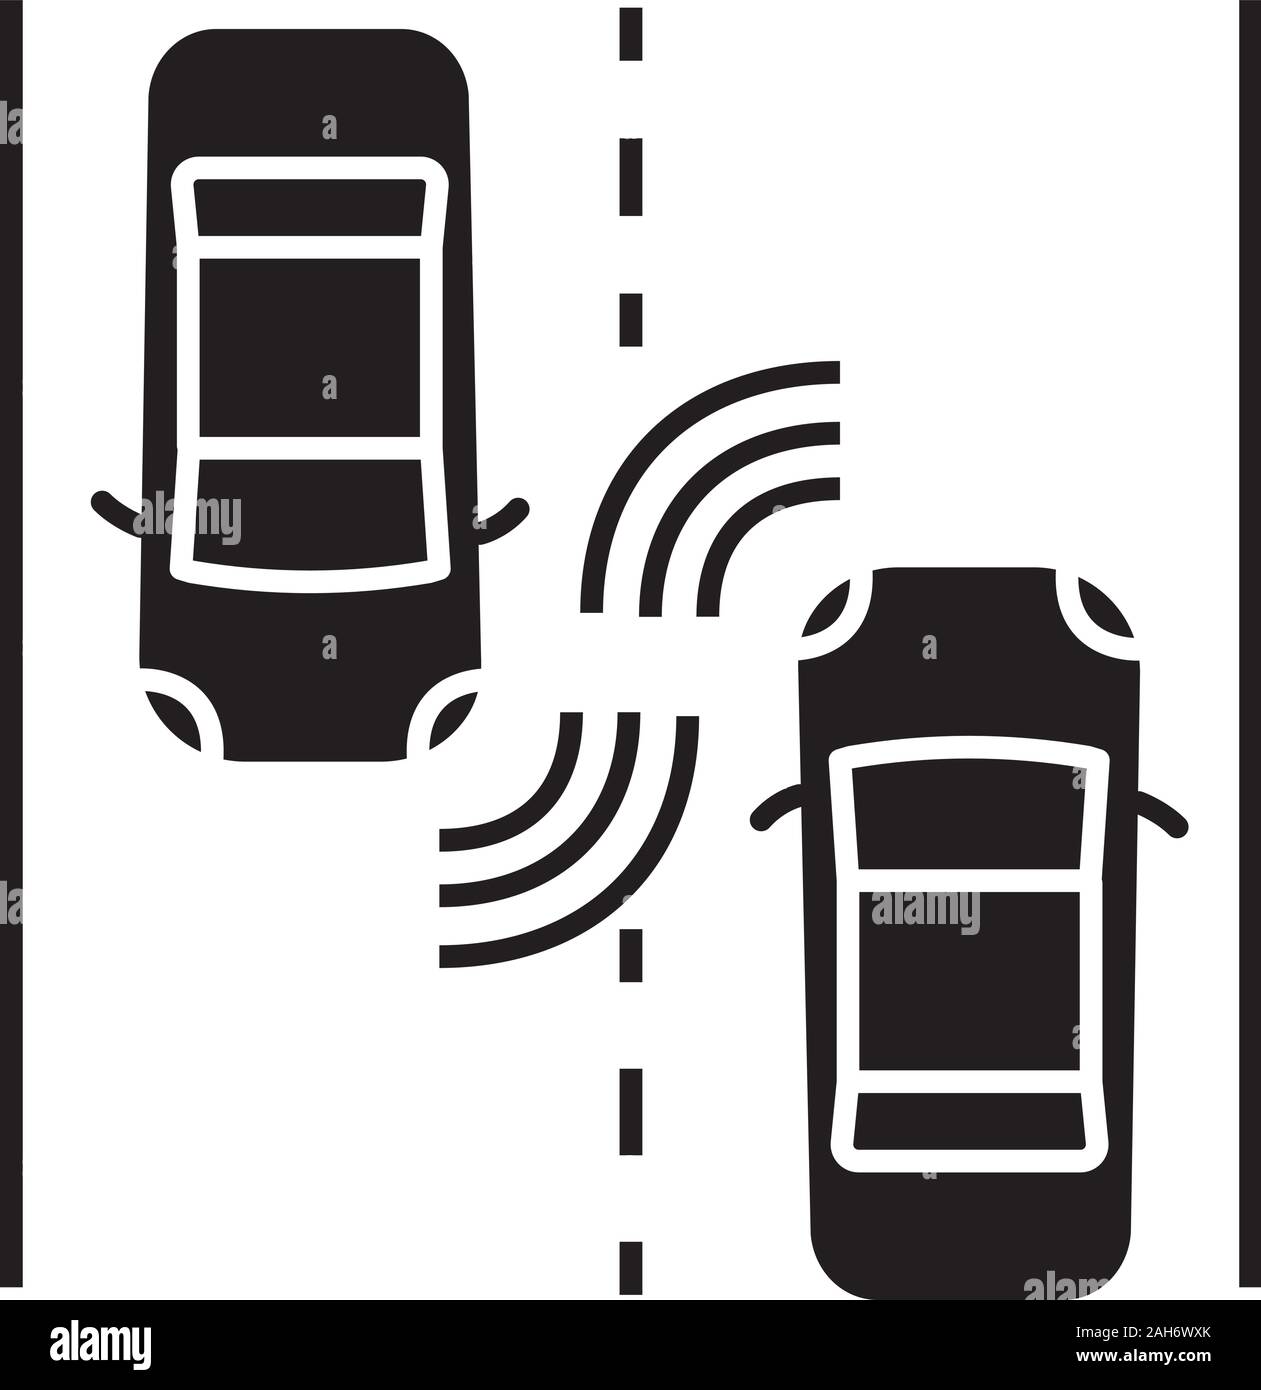 Autonome Autos auf der Straße glyph Icon. Fahrerlose auto Radar Sensor zur Erfassung von anderen Fahrzeugen. Selbstfahrer Automobile. Intelligente Fahrzeuge. Smart Auto. S Stock Vektor